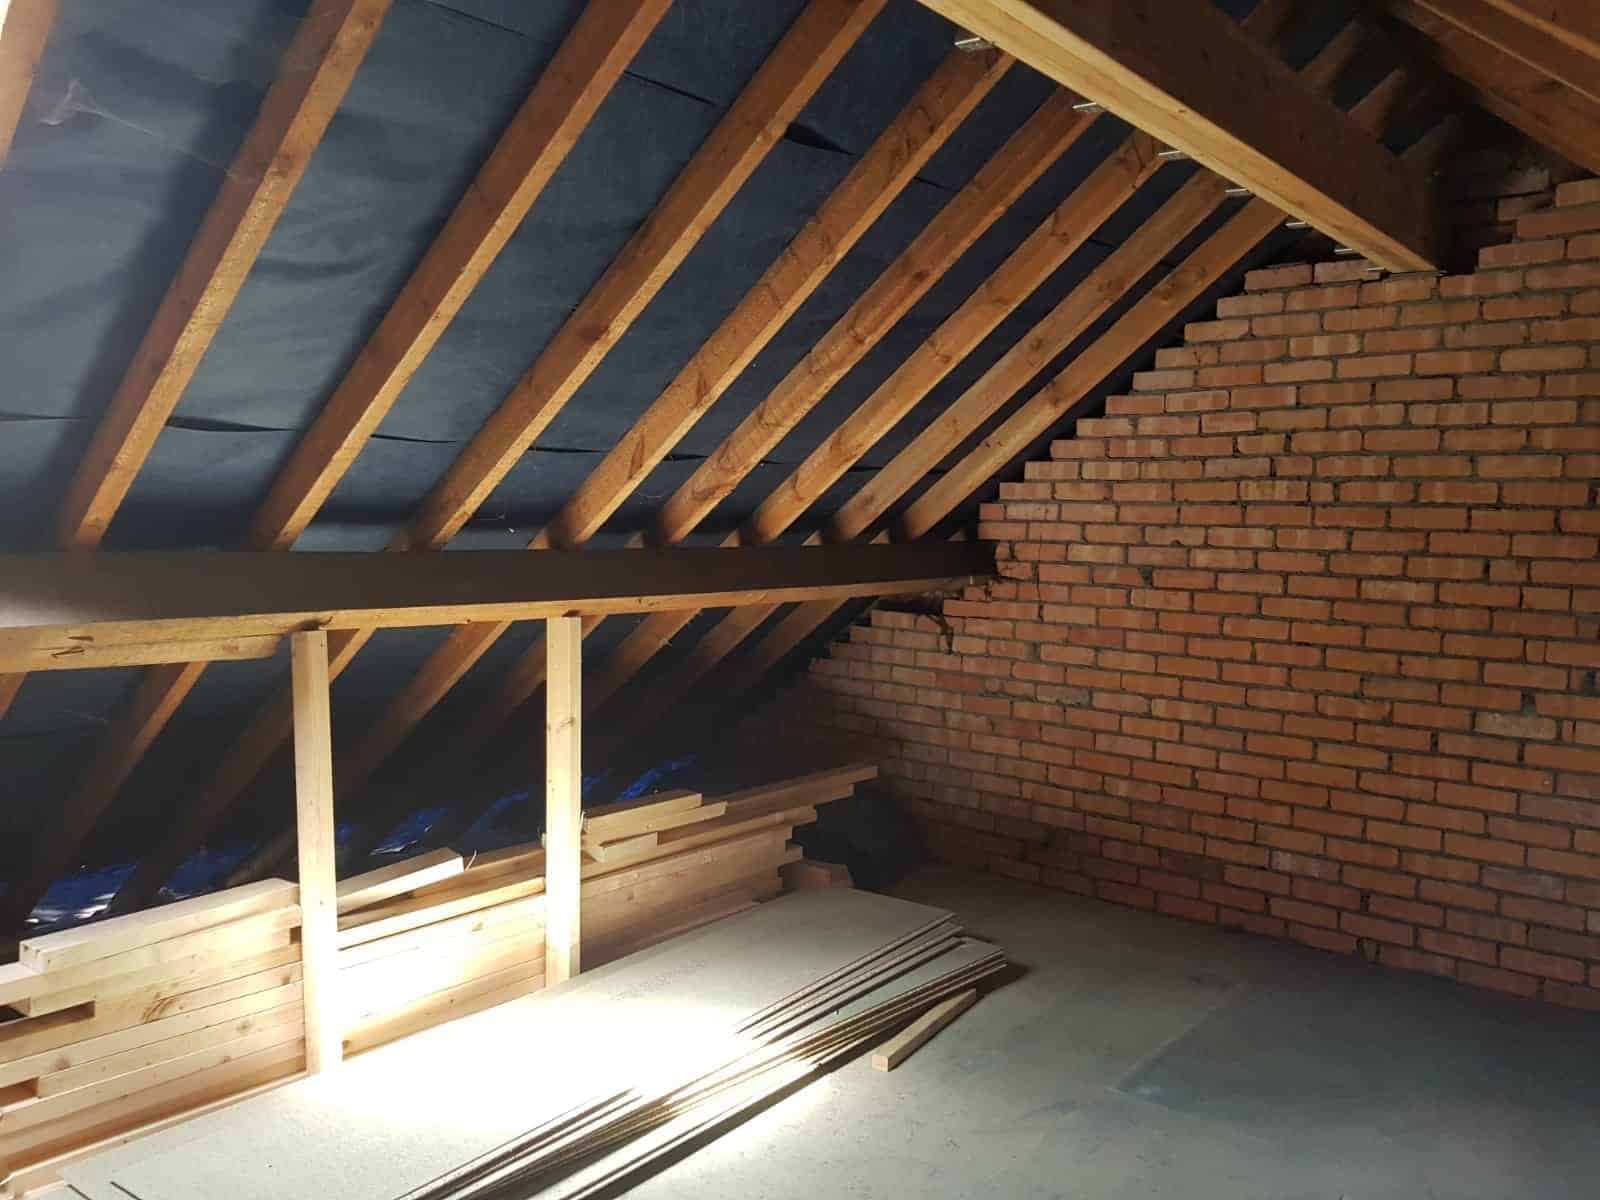 loft conversion process and beams